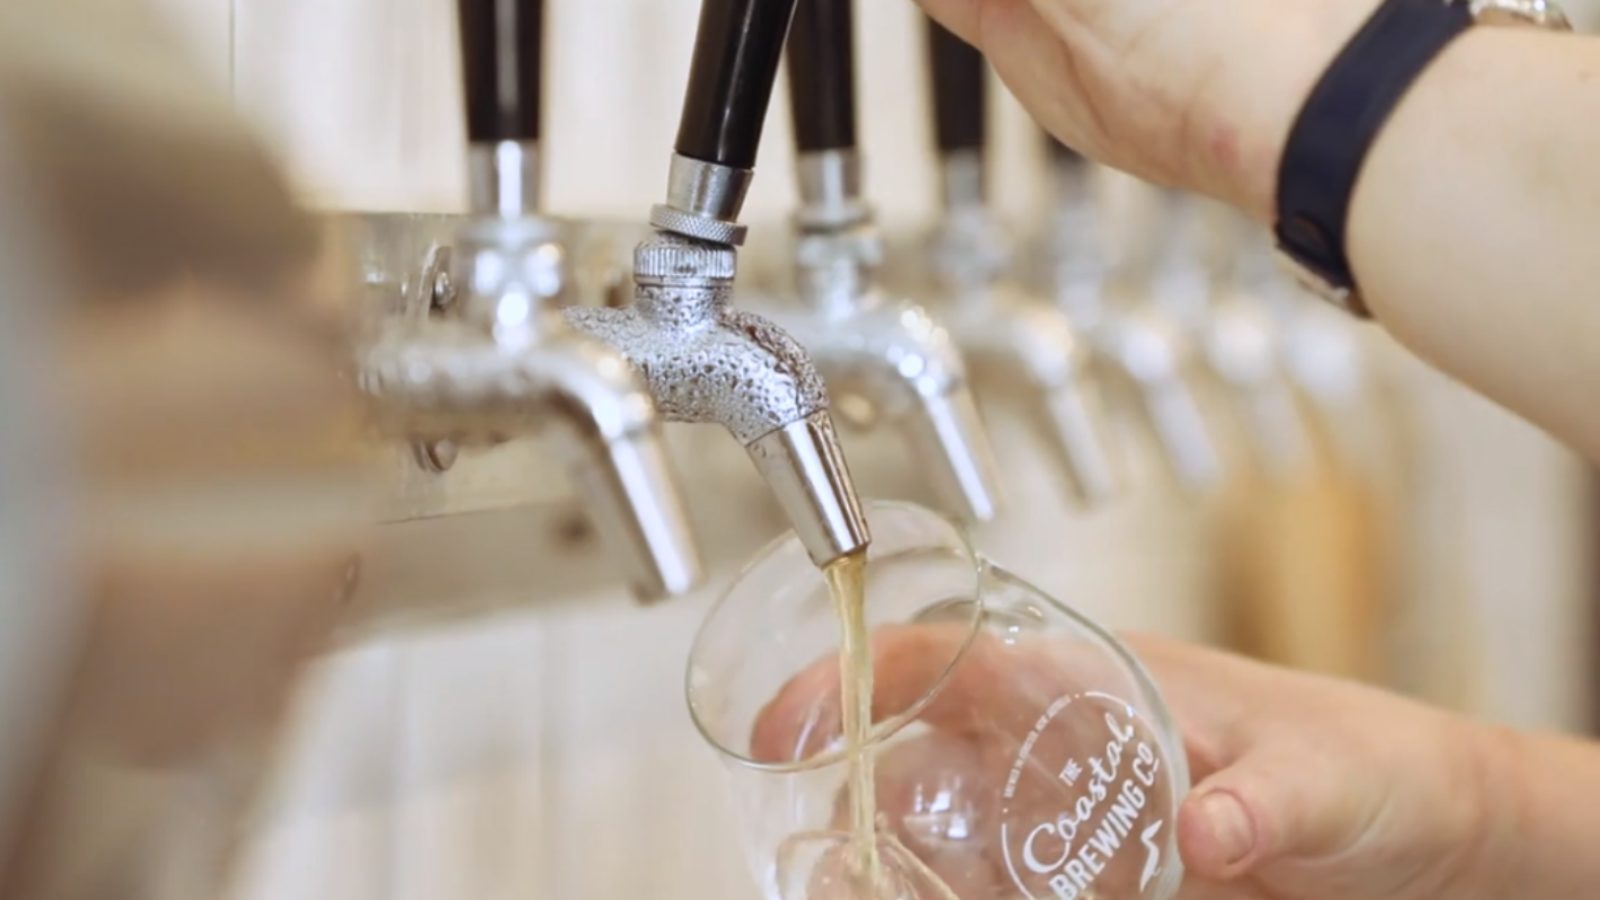 Coastal Brewing Co tap pour